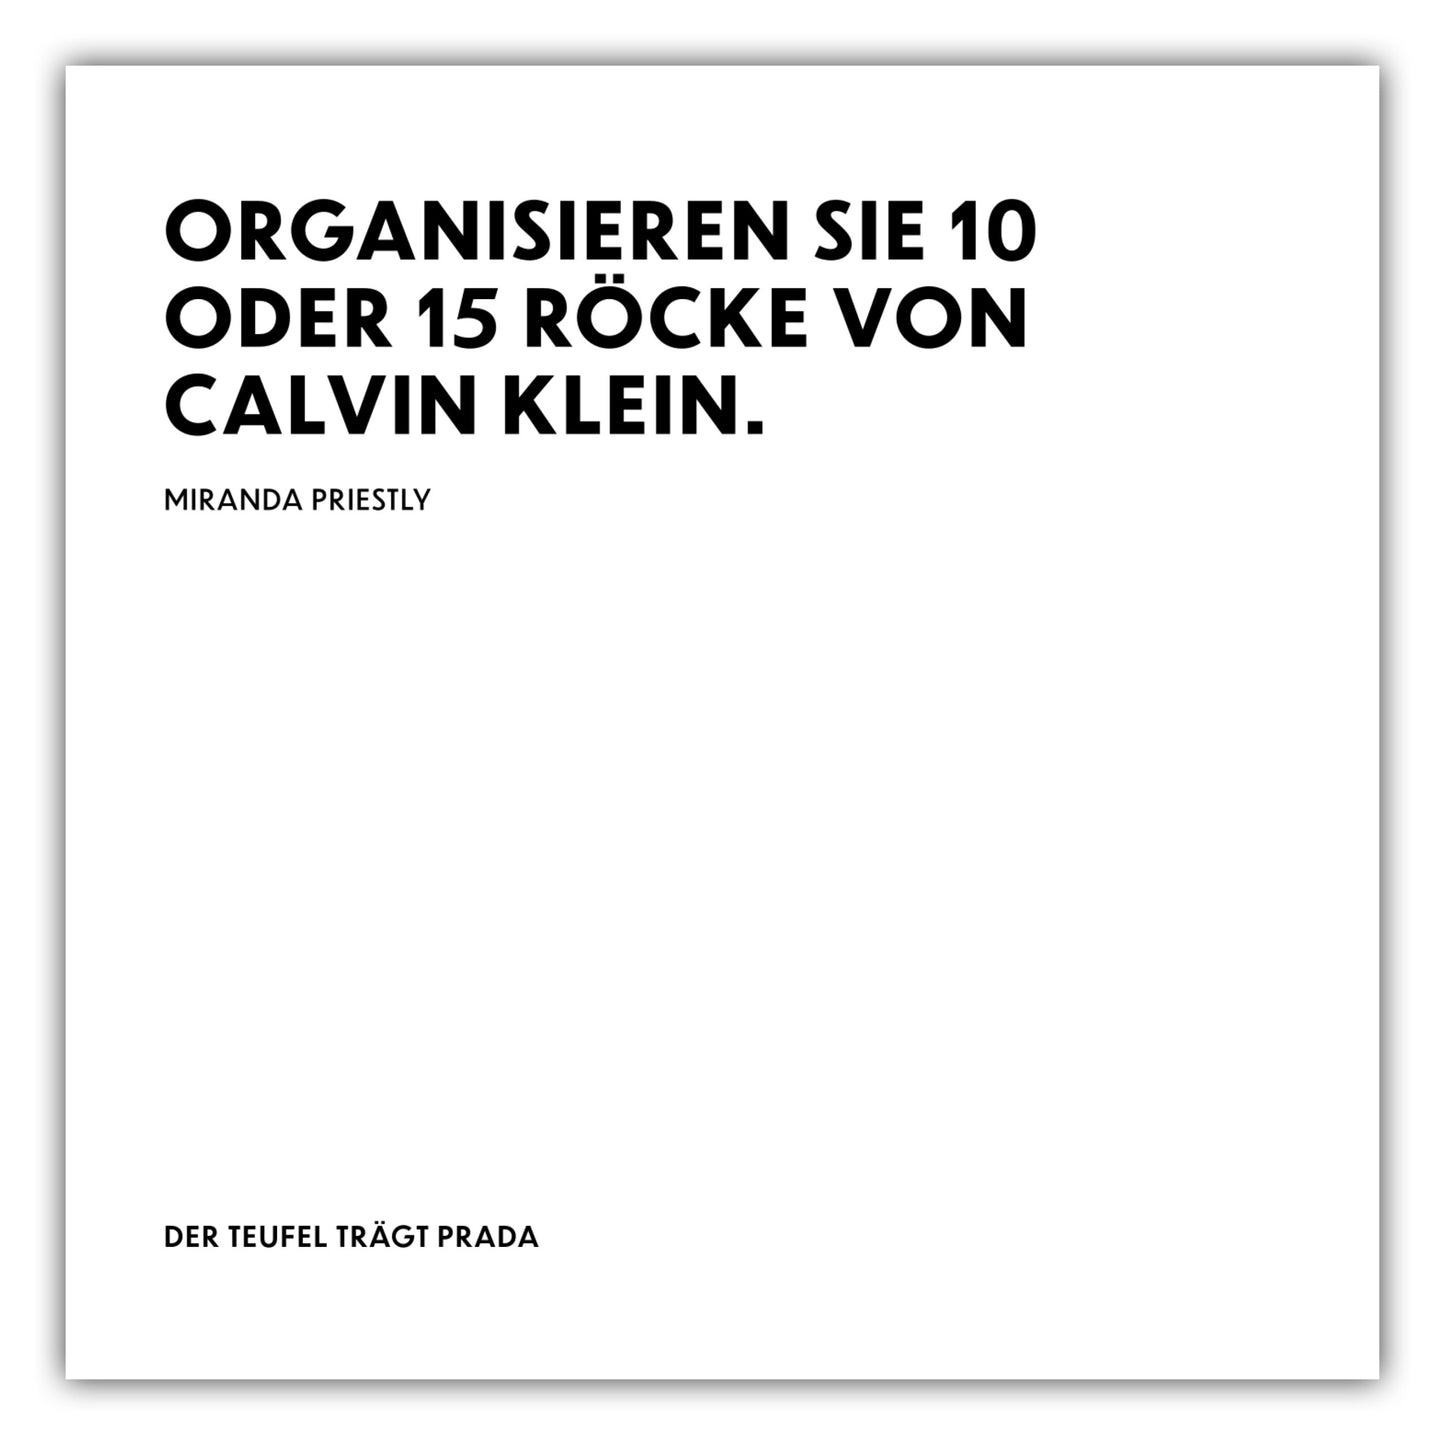 Poster Organisieren Sie 10 oder 15 Röcke von Calvin Klein. - Miranda Priestly - The Devil Wears Prada (Der Teufel trägt Prada)